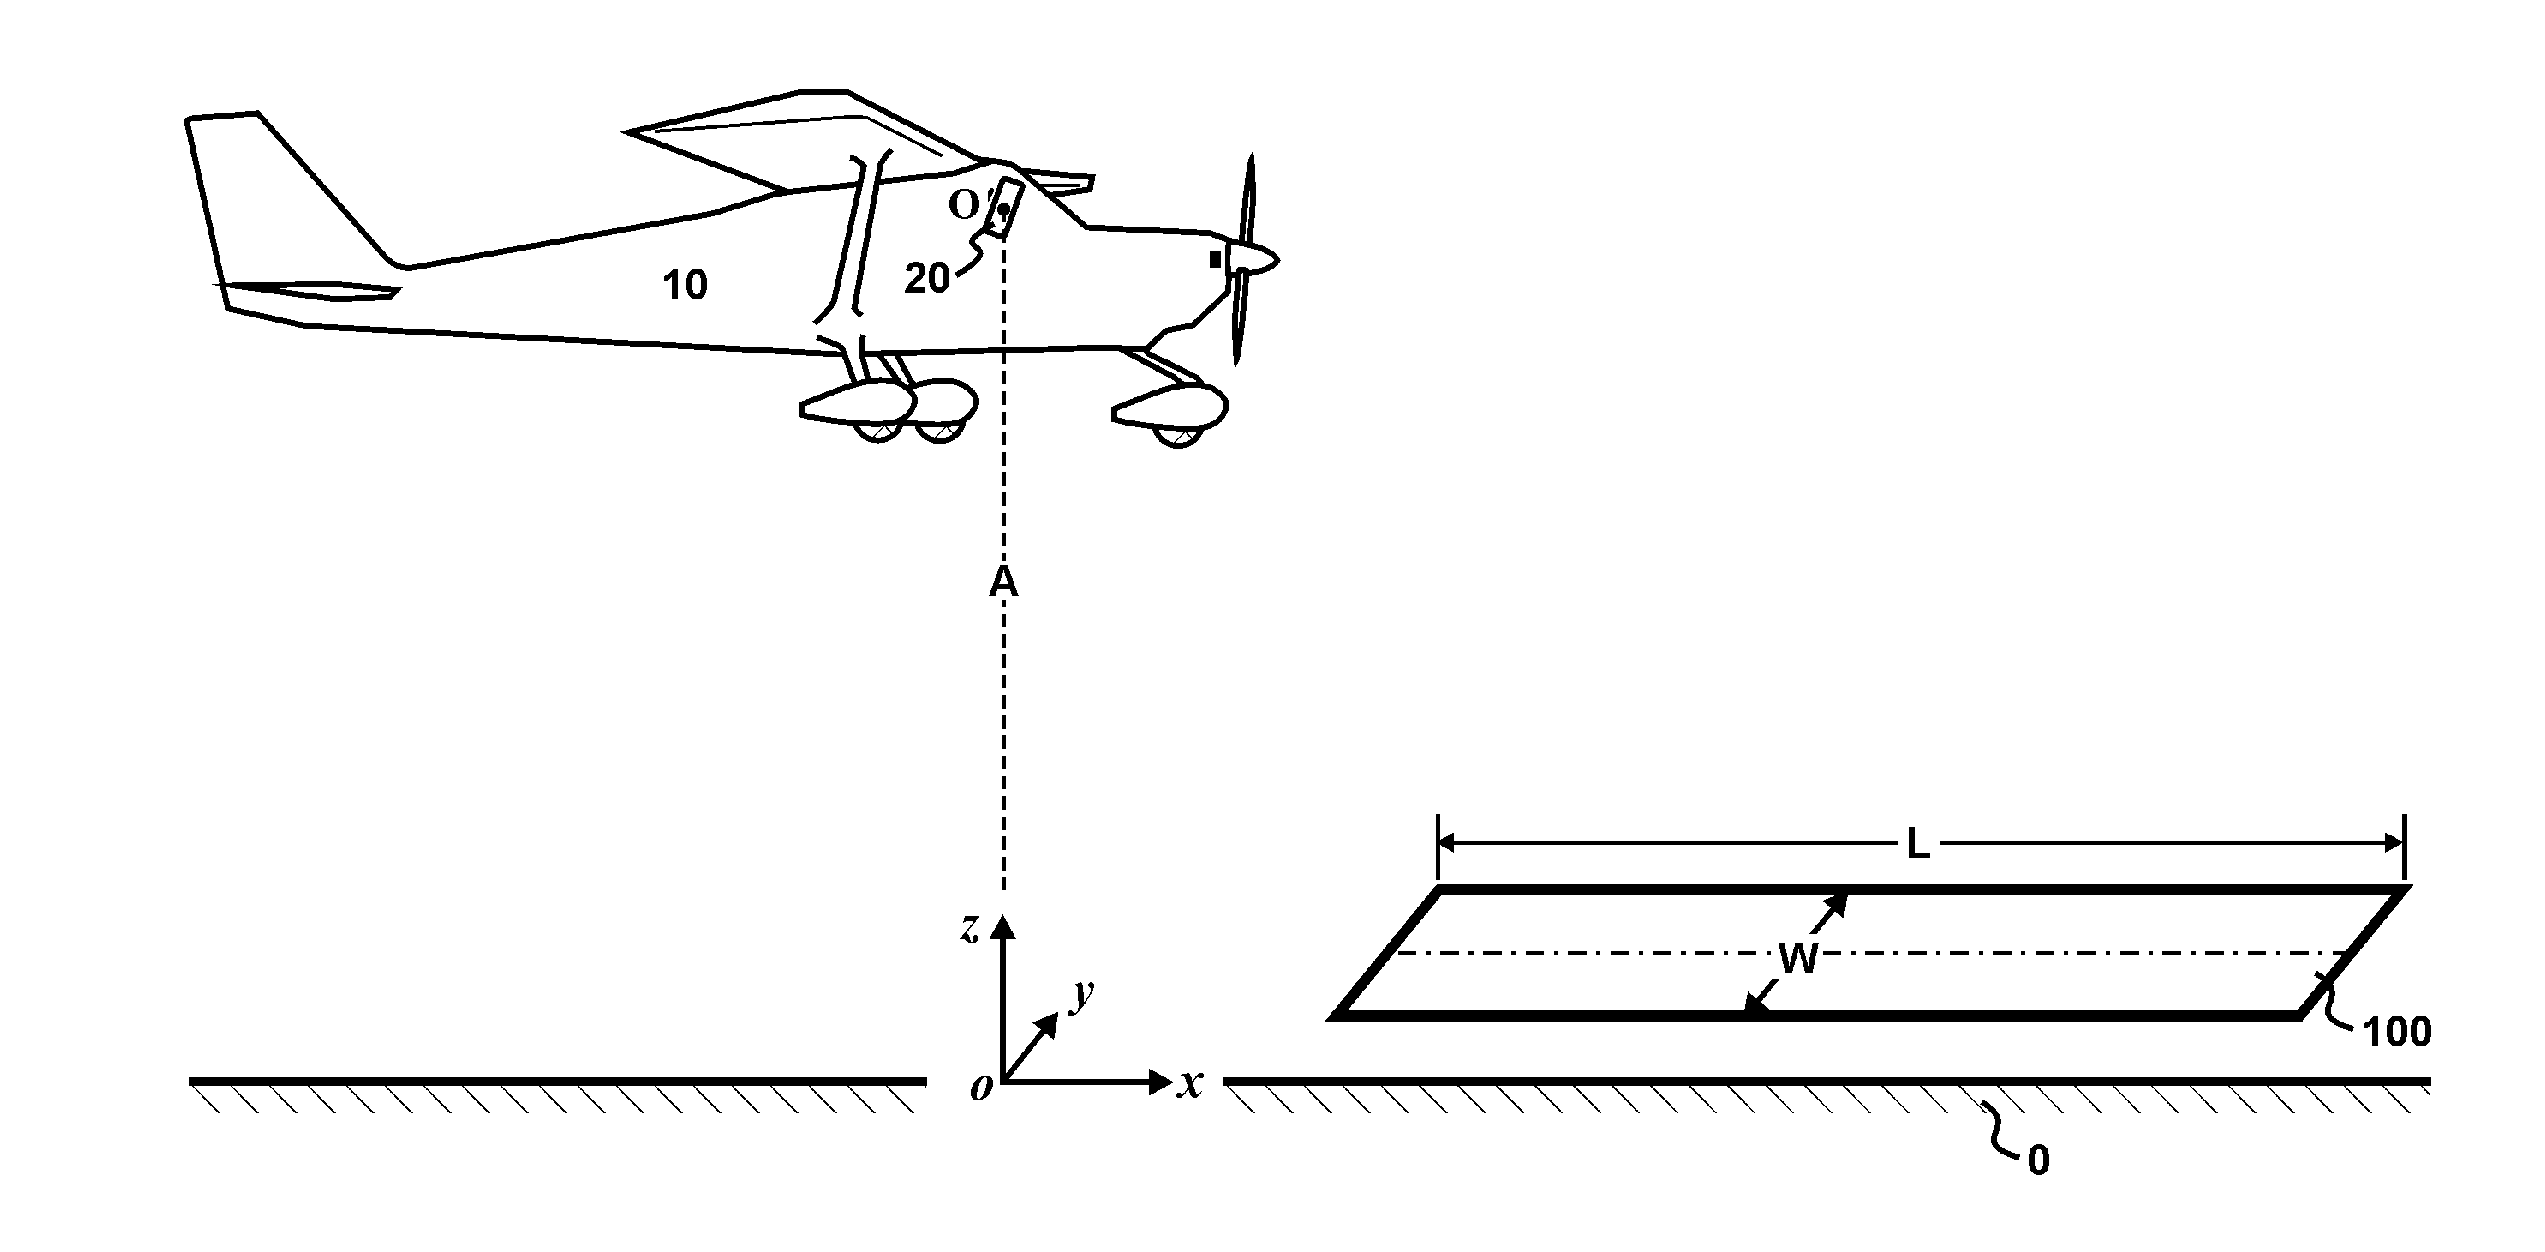 Vision-Based Aircraft Landing Aid